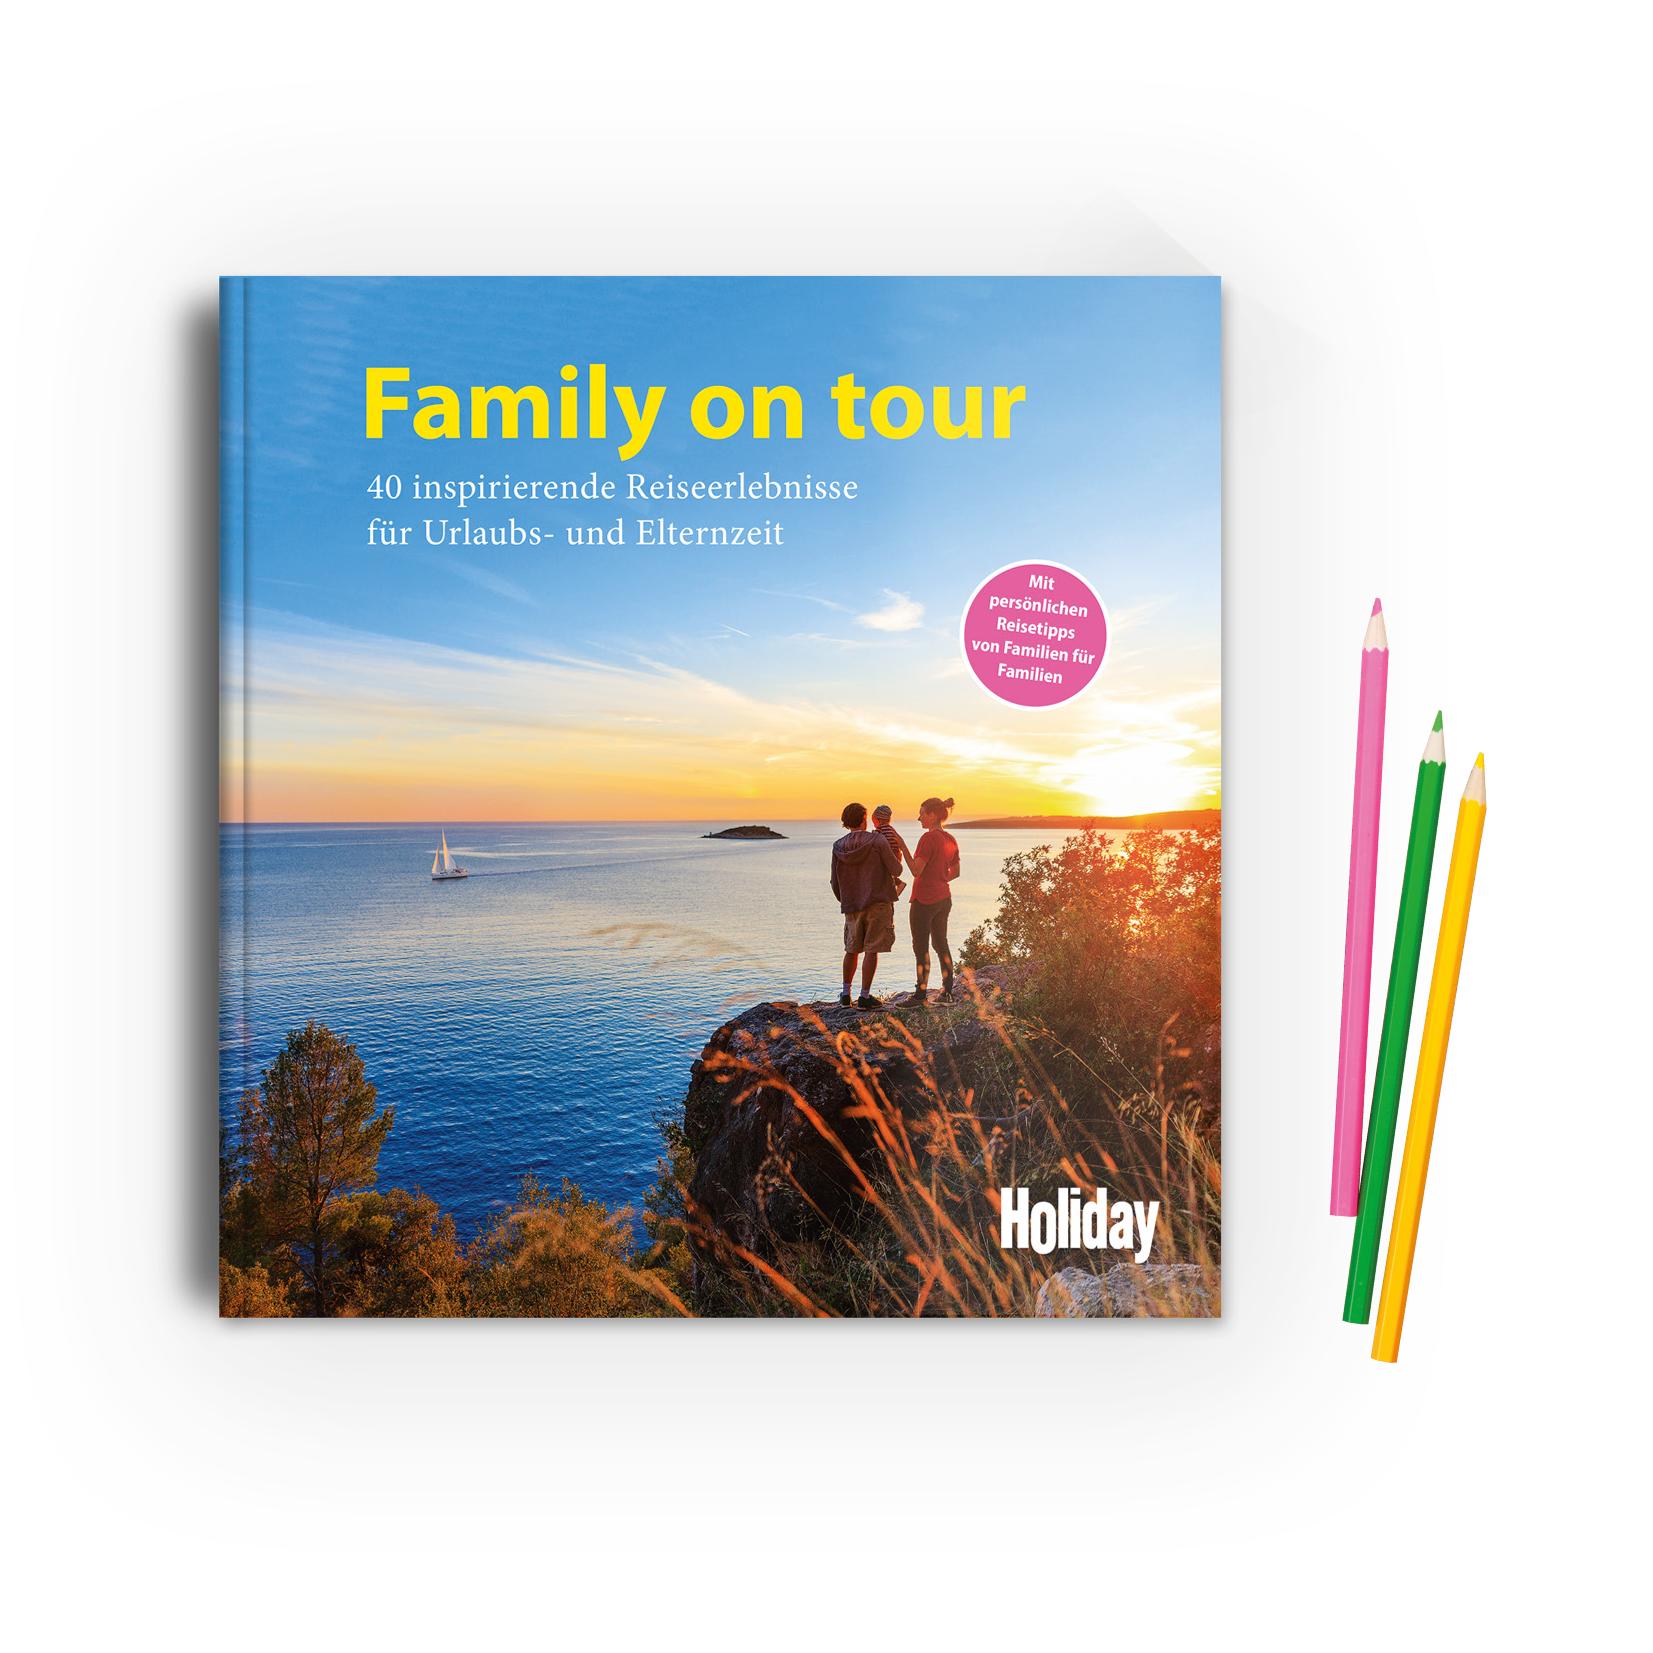 HOLIDAY Reisebuch: Family on tour